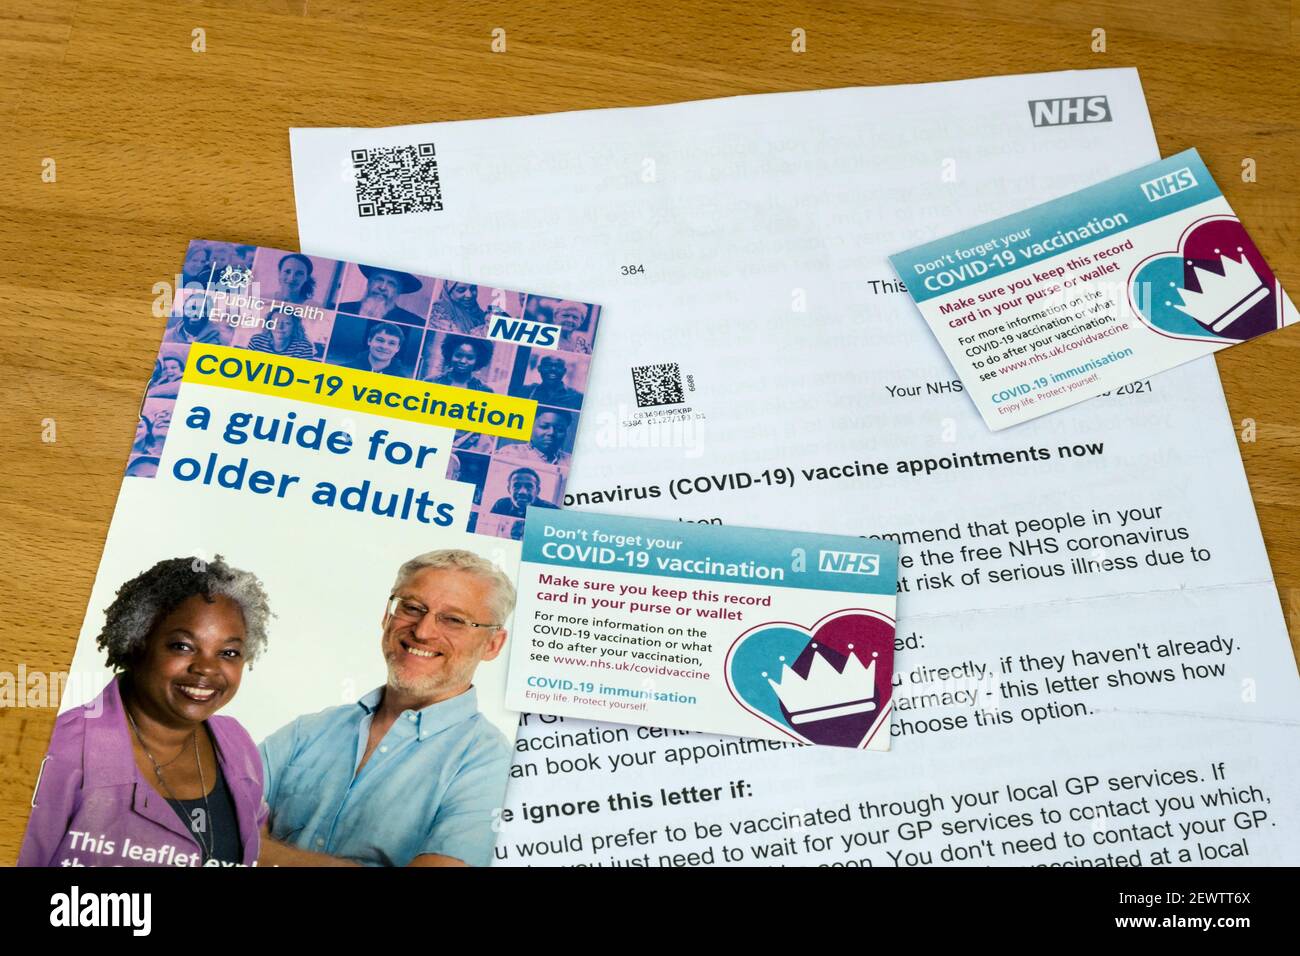 Una guía y carta de NHS invitando a las vacunas Covid-19 para adultos mayores, con dos tarjetas de registro de vacunación Covid-19. Foto de stock